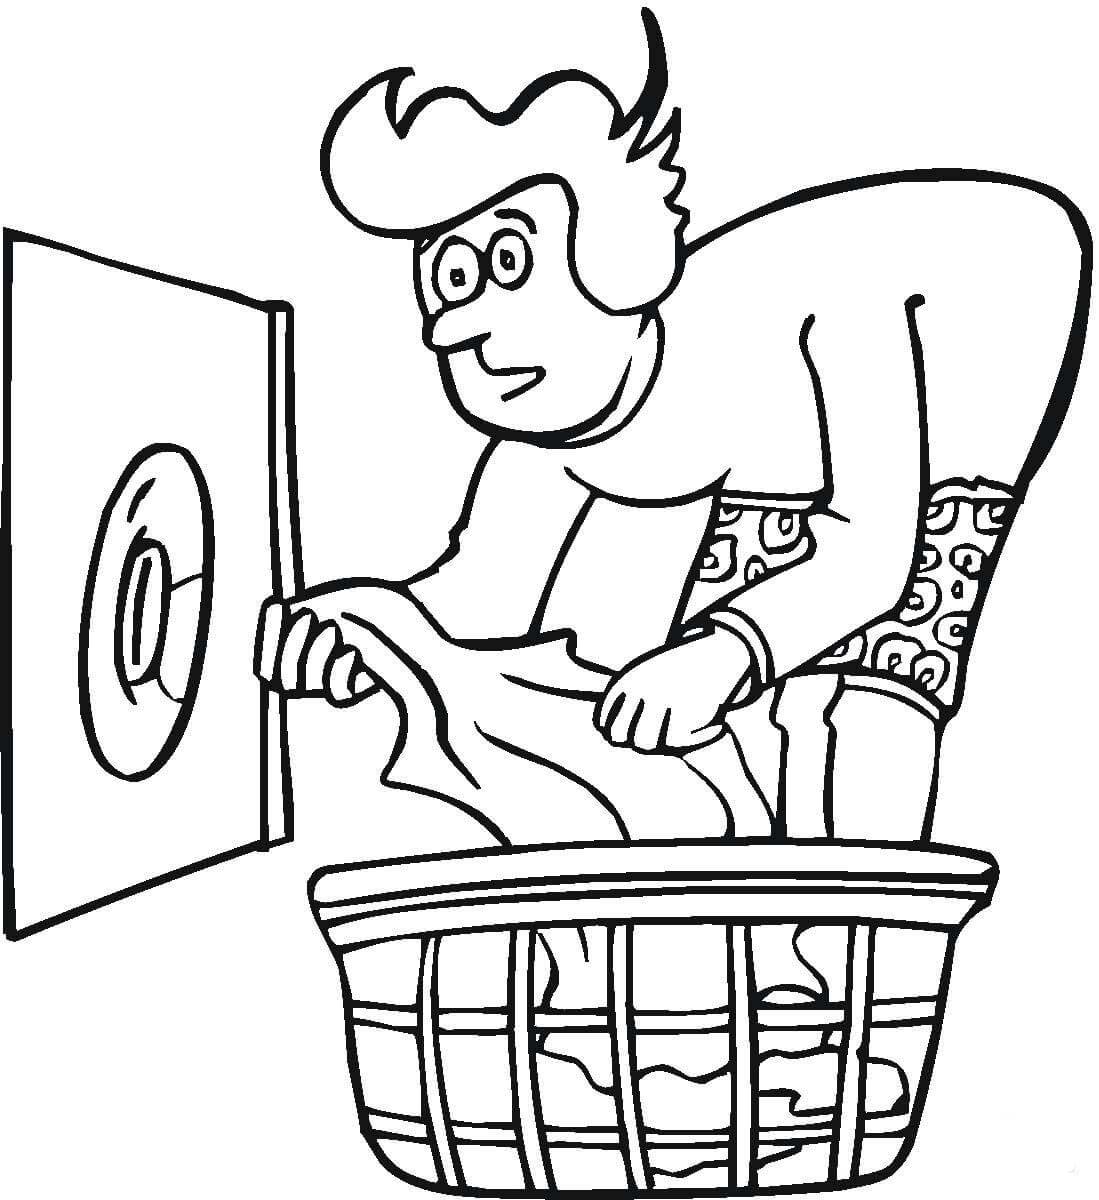 Homem colocando roupa suja na lavadoura